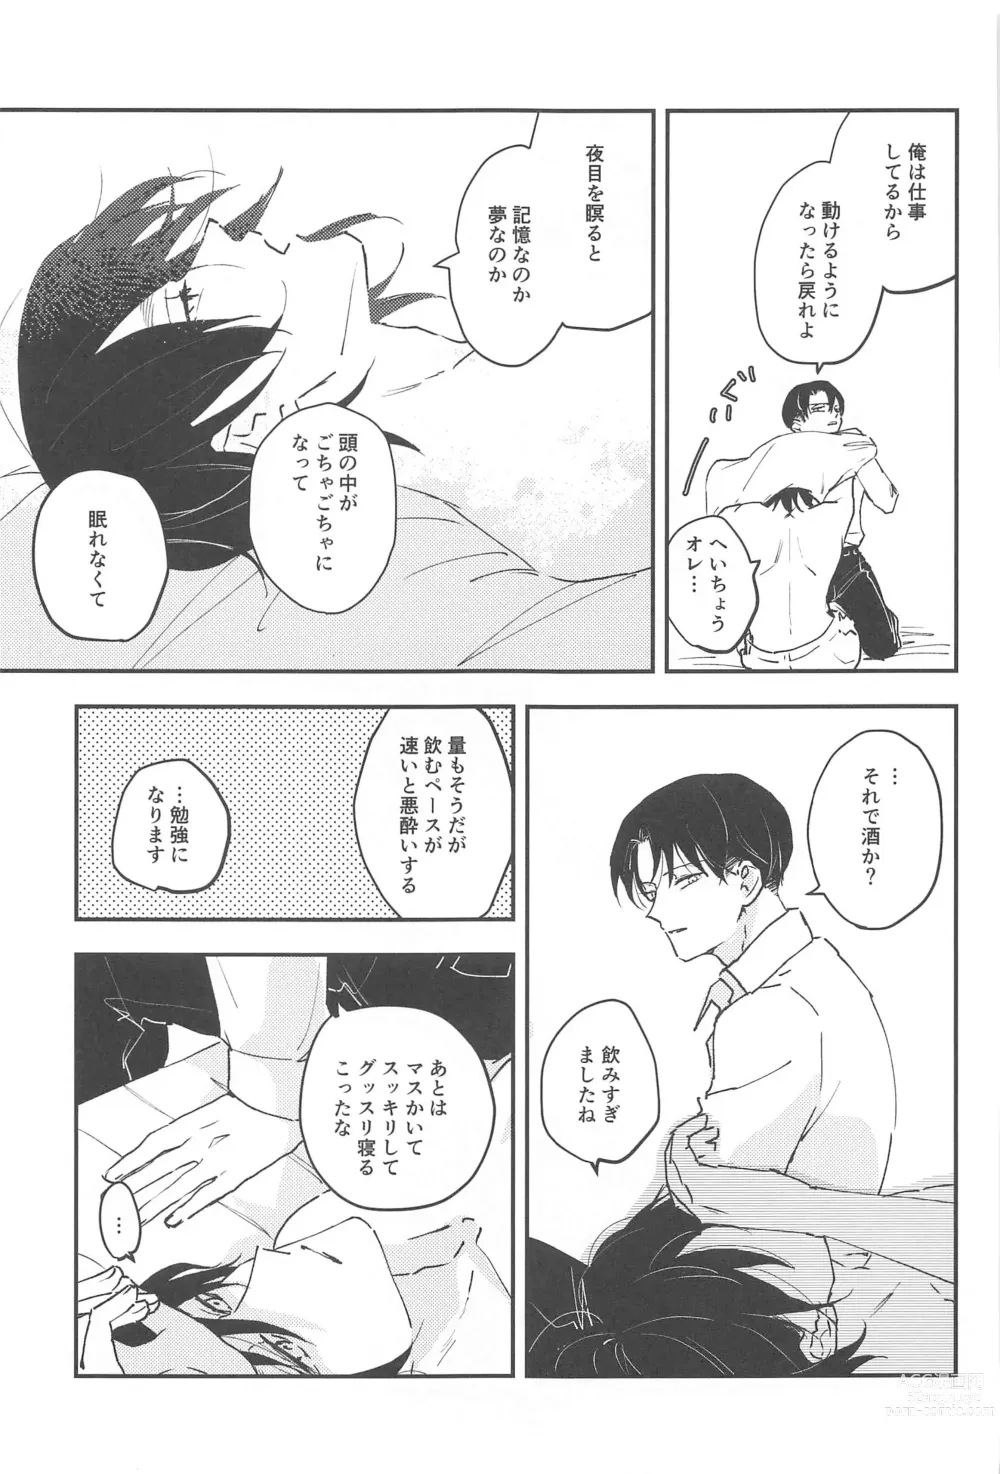 Page 6 of doujinshi Crush